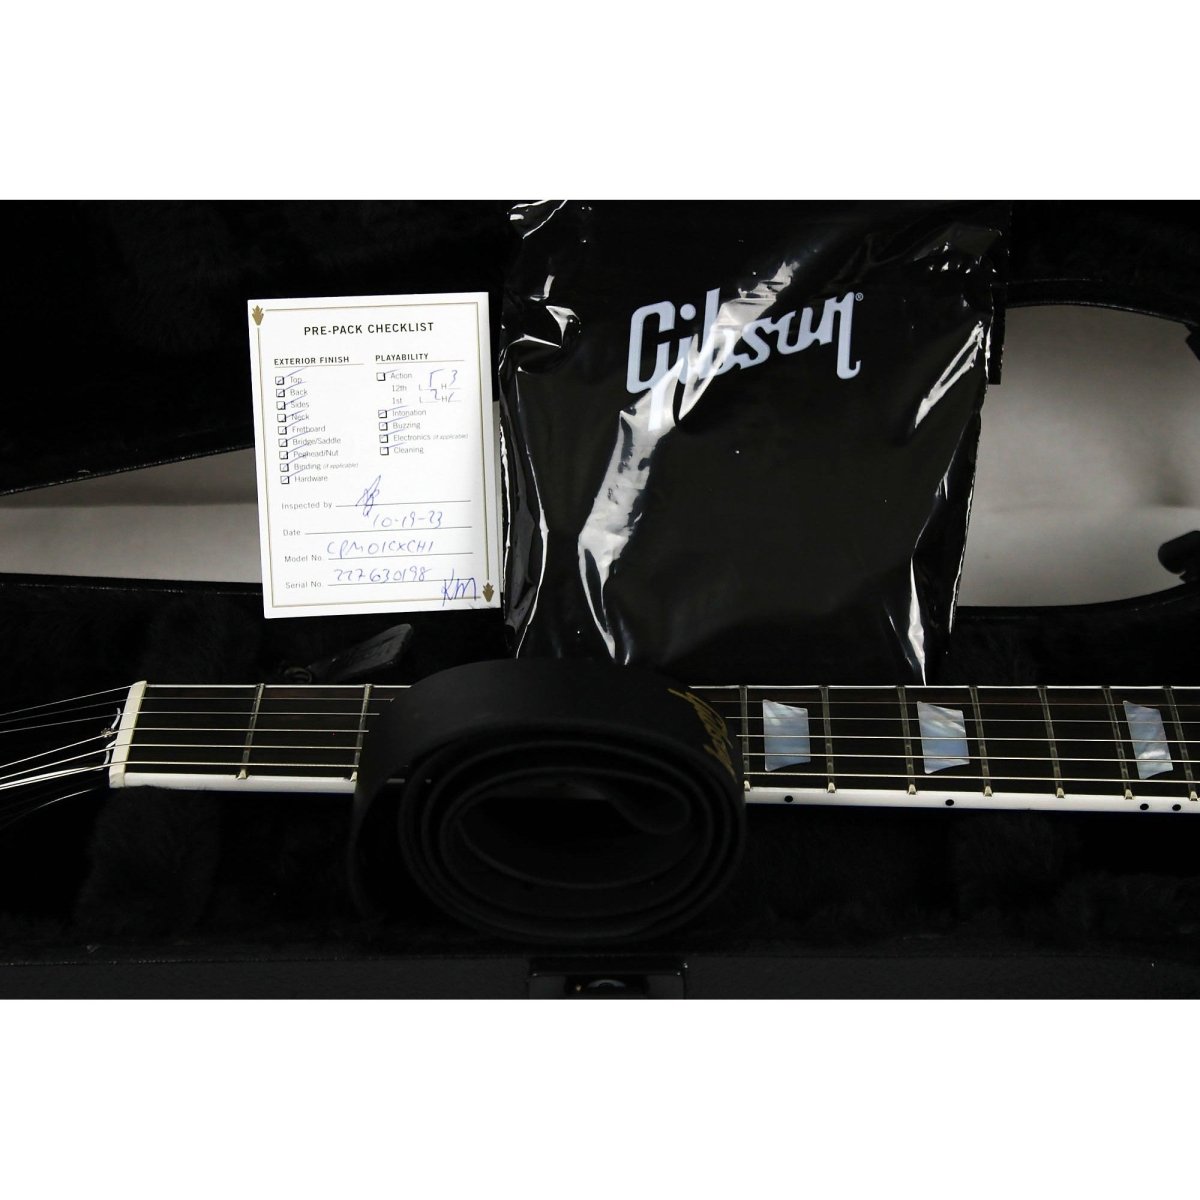 Gibson Les Paul Modern Figured - Cobalt Burst - Leitz Music-711106136998-LPM01CXCH1